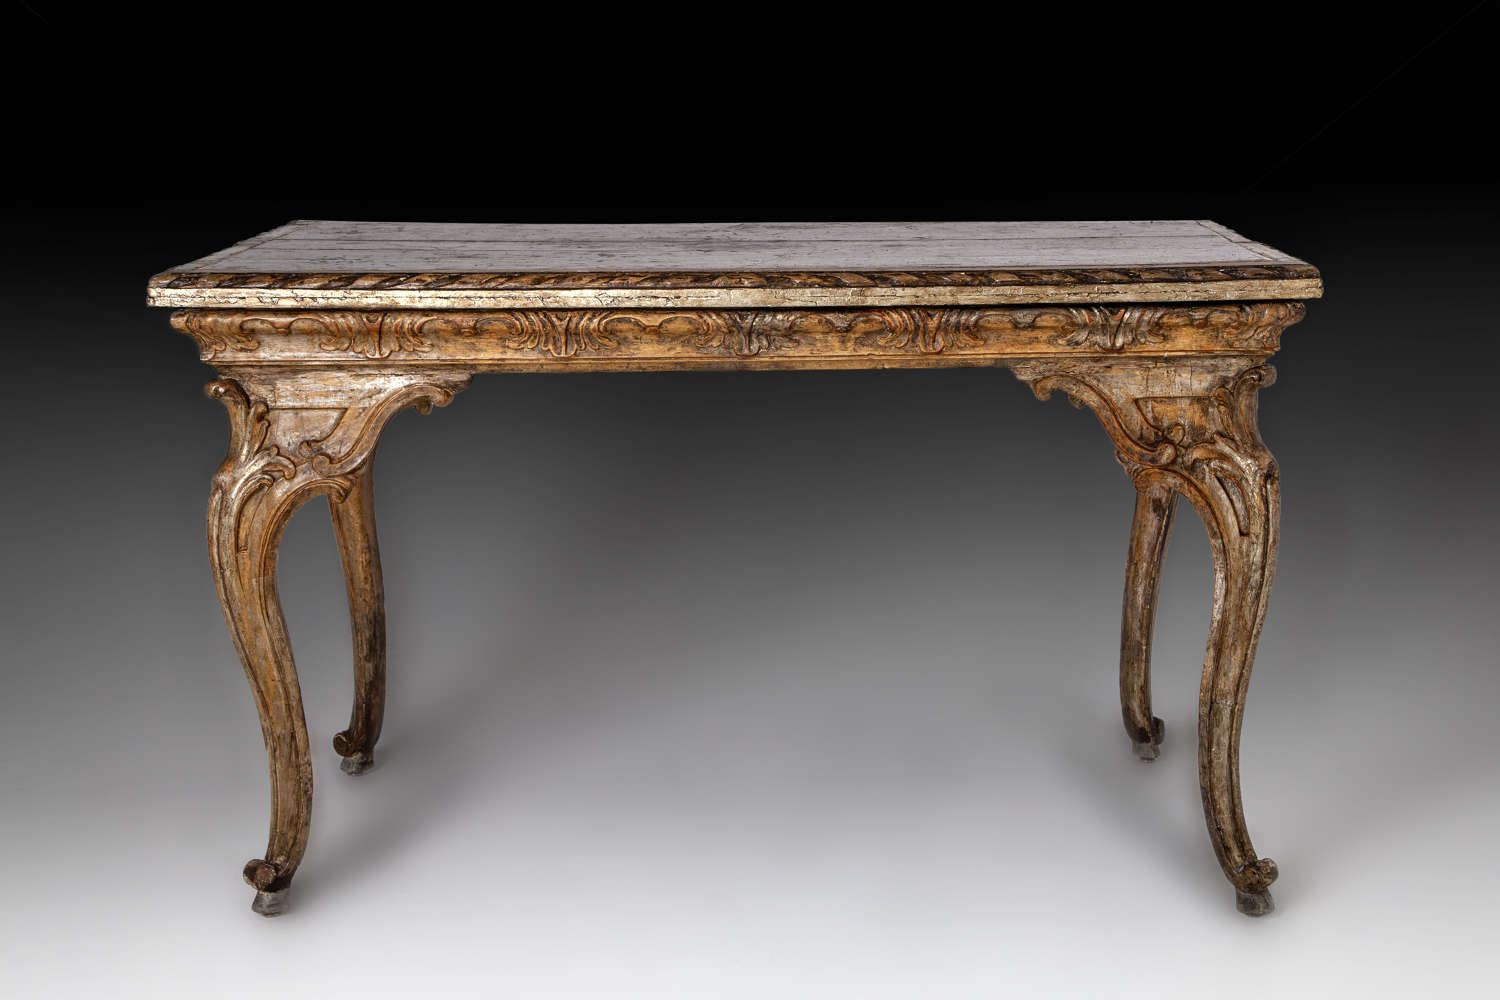 A beautiful mid 18th century Italian rococo centre table